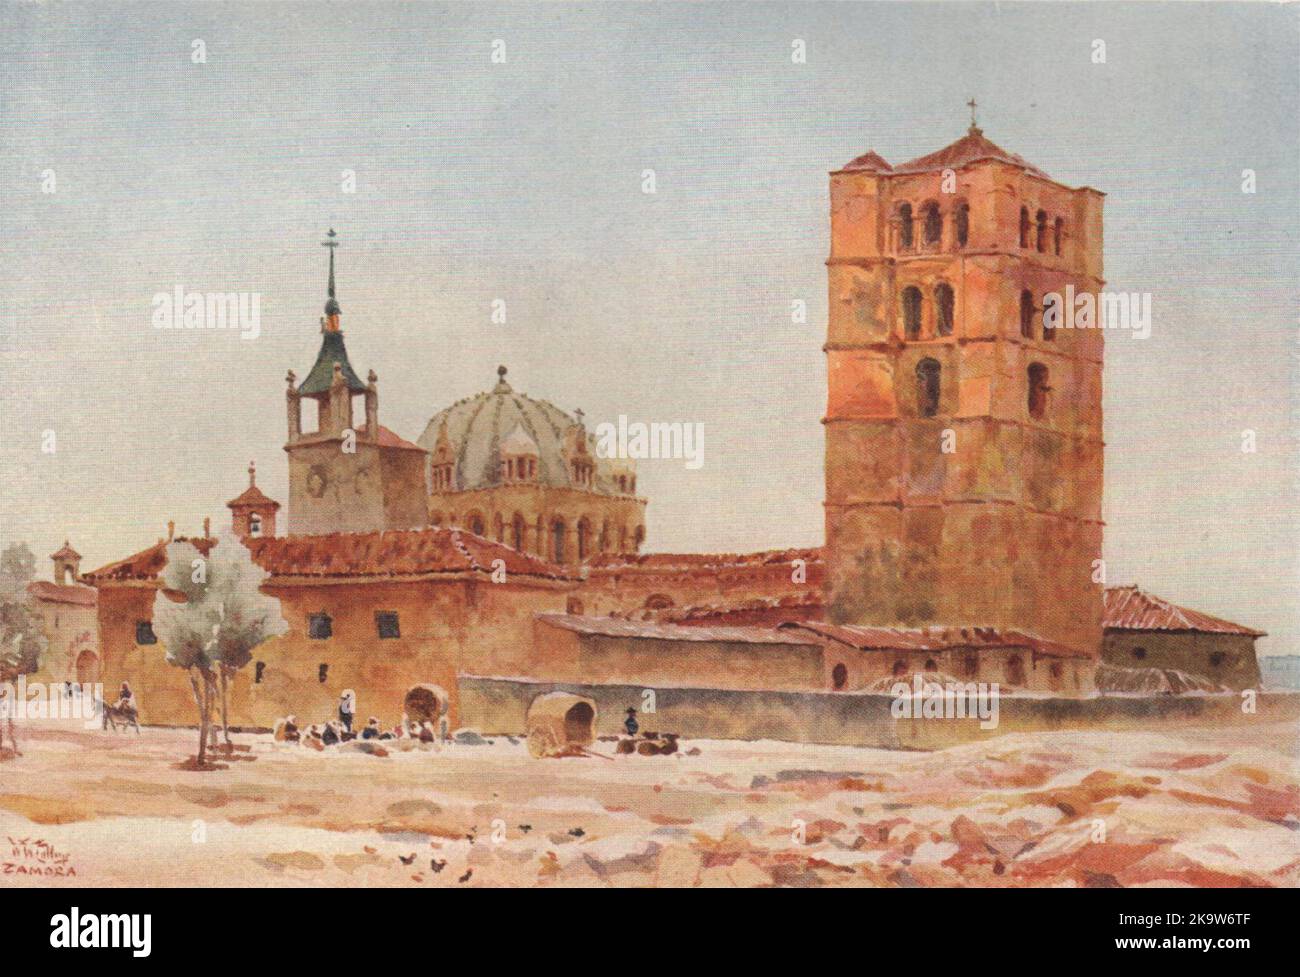 La cathédrale, Zamora, Espagne, par William Wiehe Collins 1909 vieux imprimé antique Banque D'Images